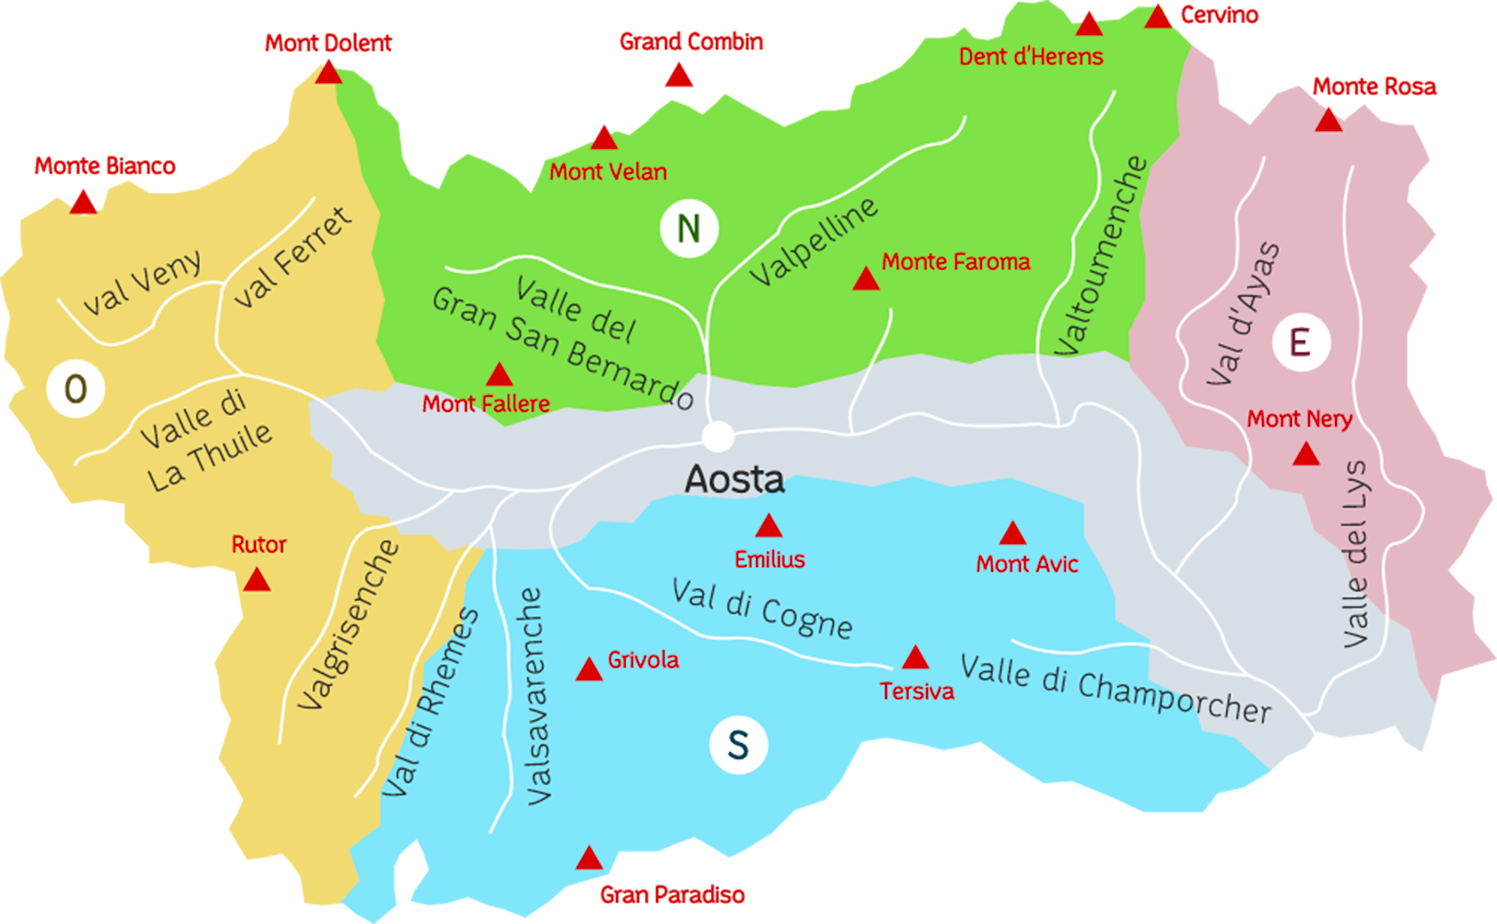 Mappa della Valle d Aosta con le principali montagne